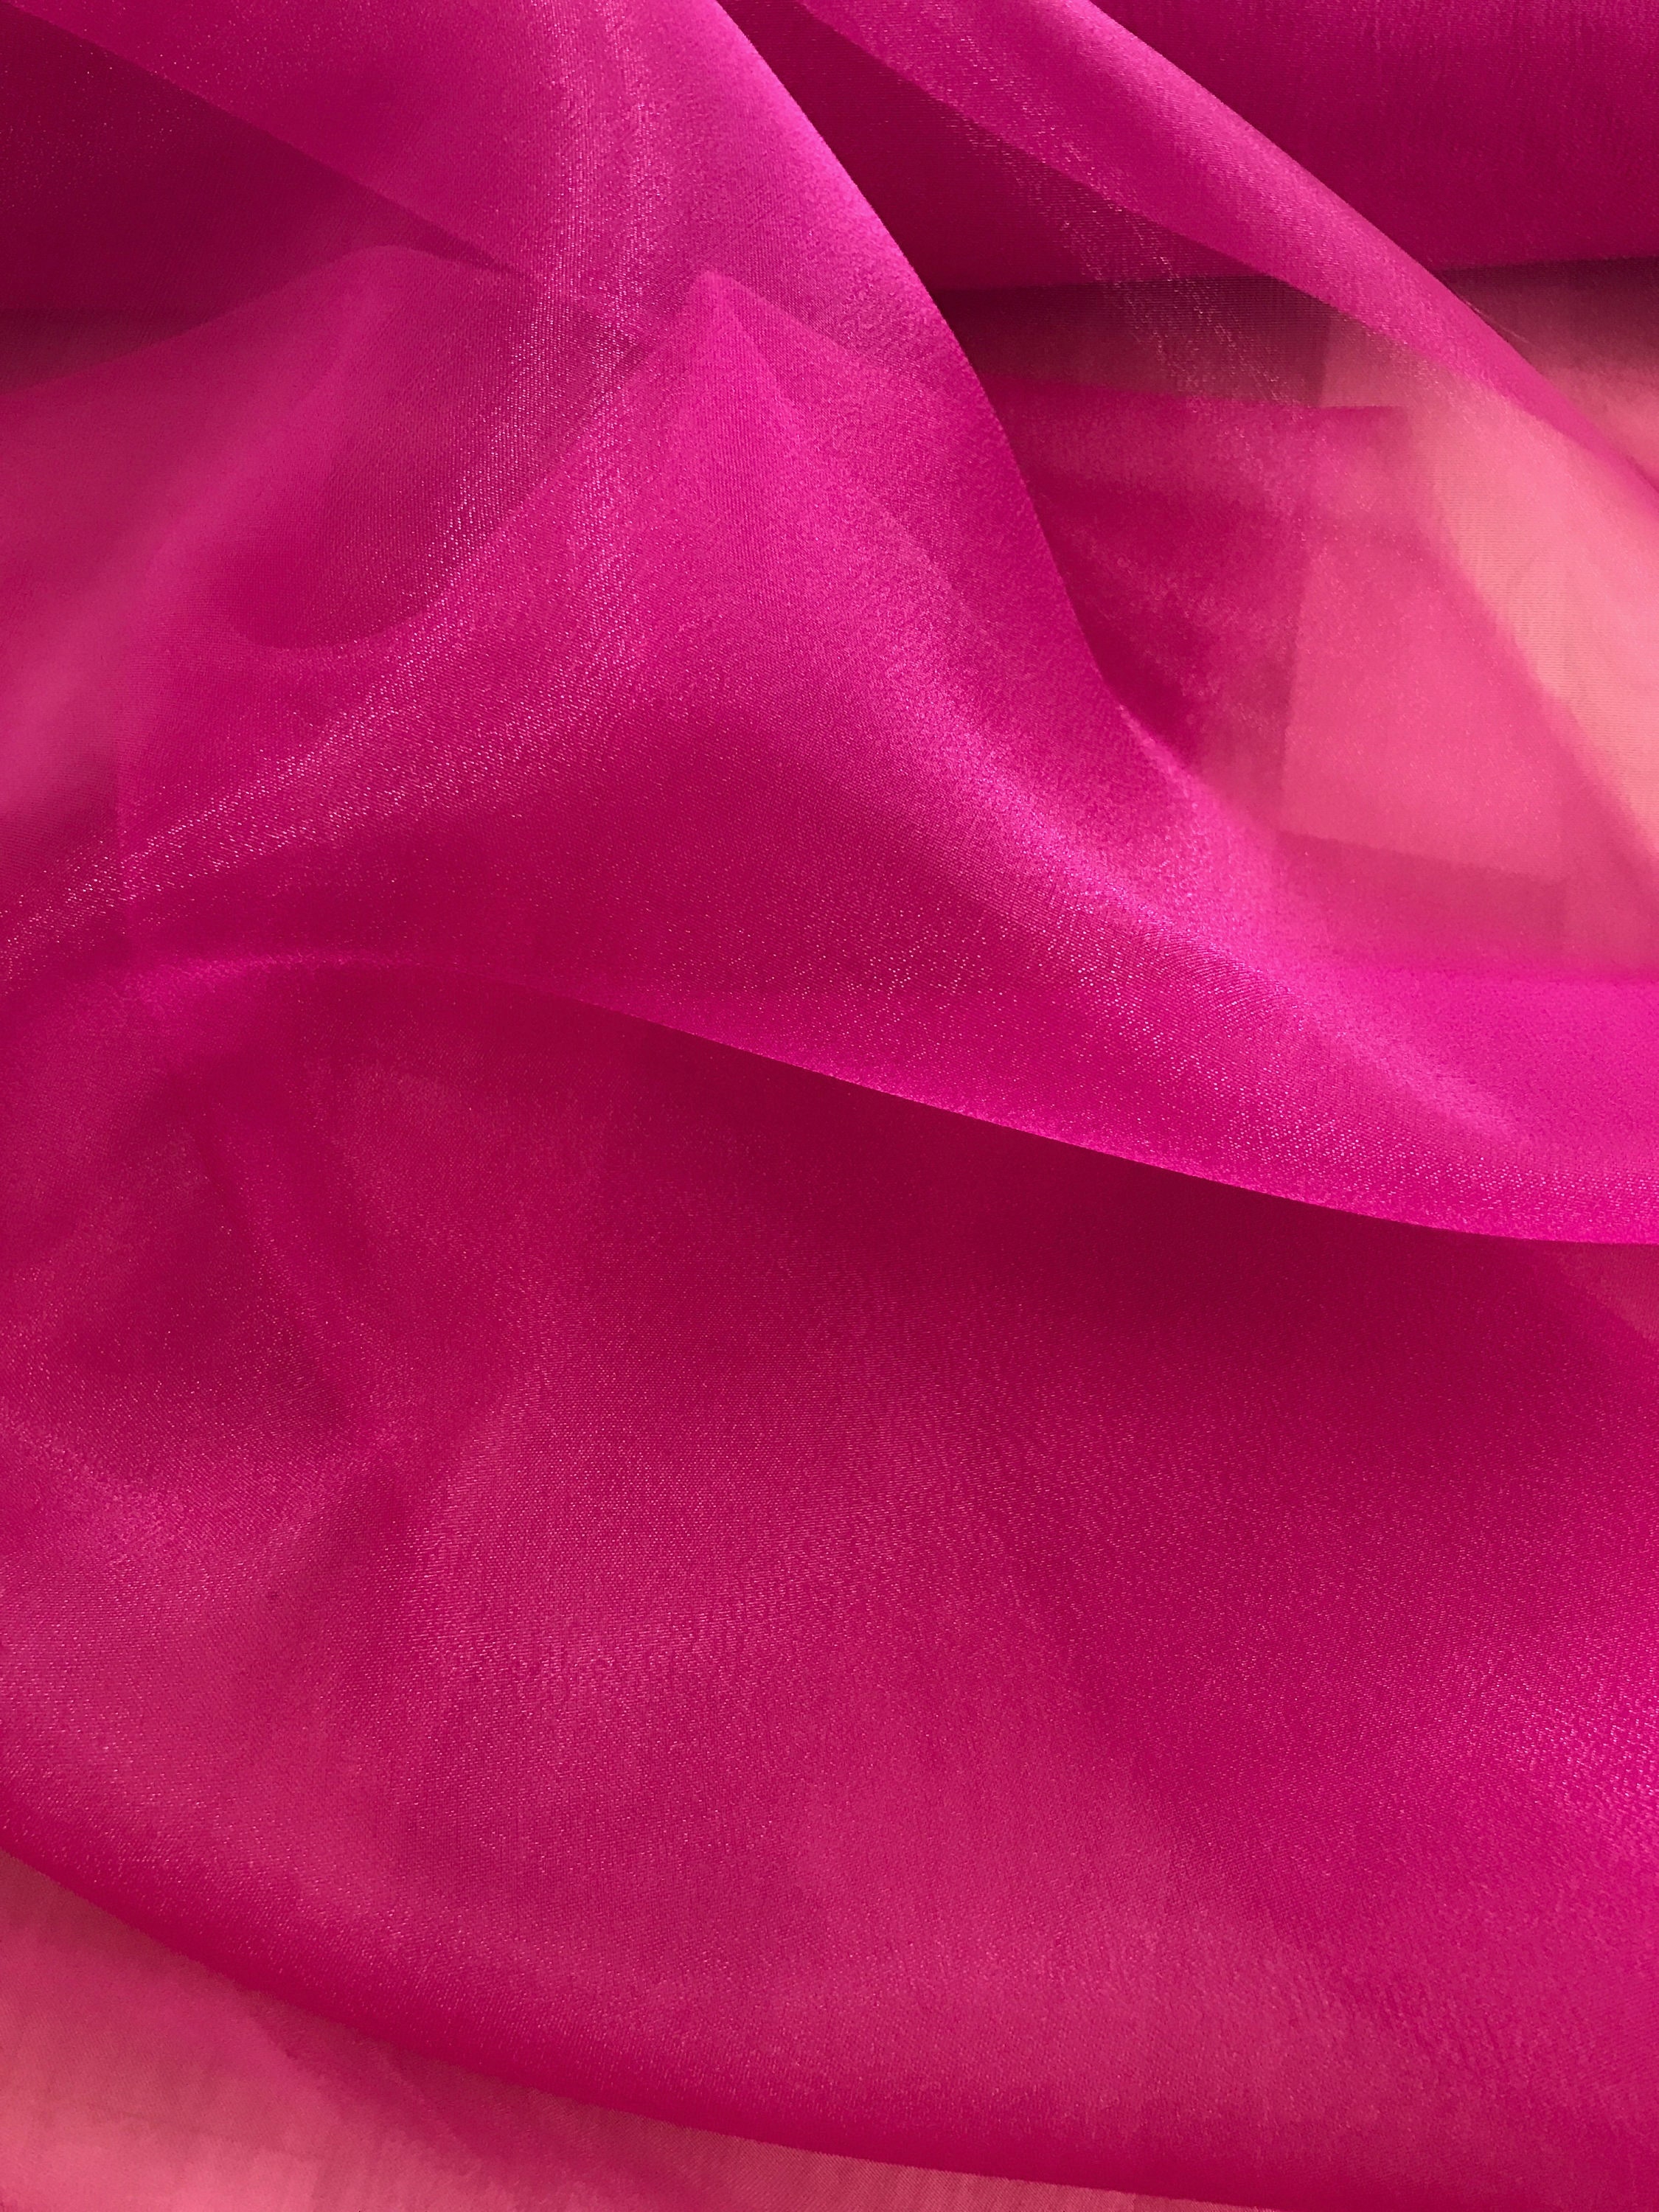 Singer Sheer Pressing Cloth, 100% Silk Organza - The Batty Lady